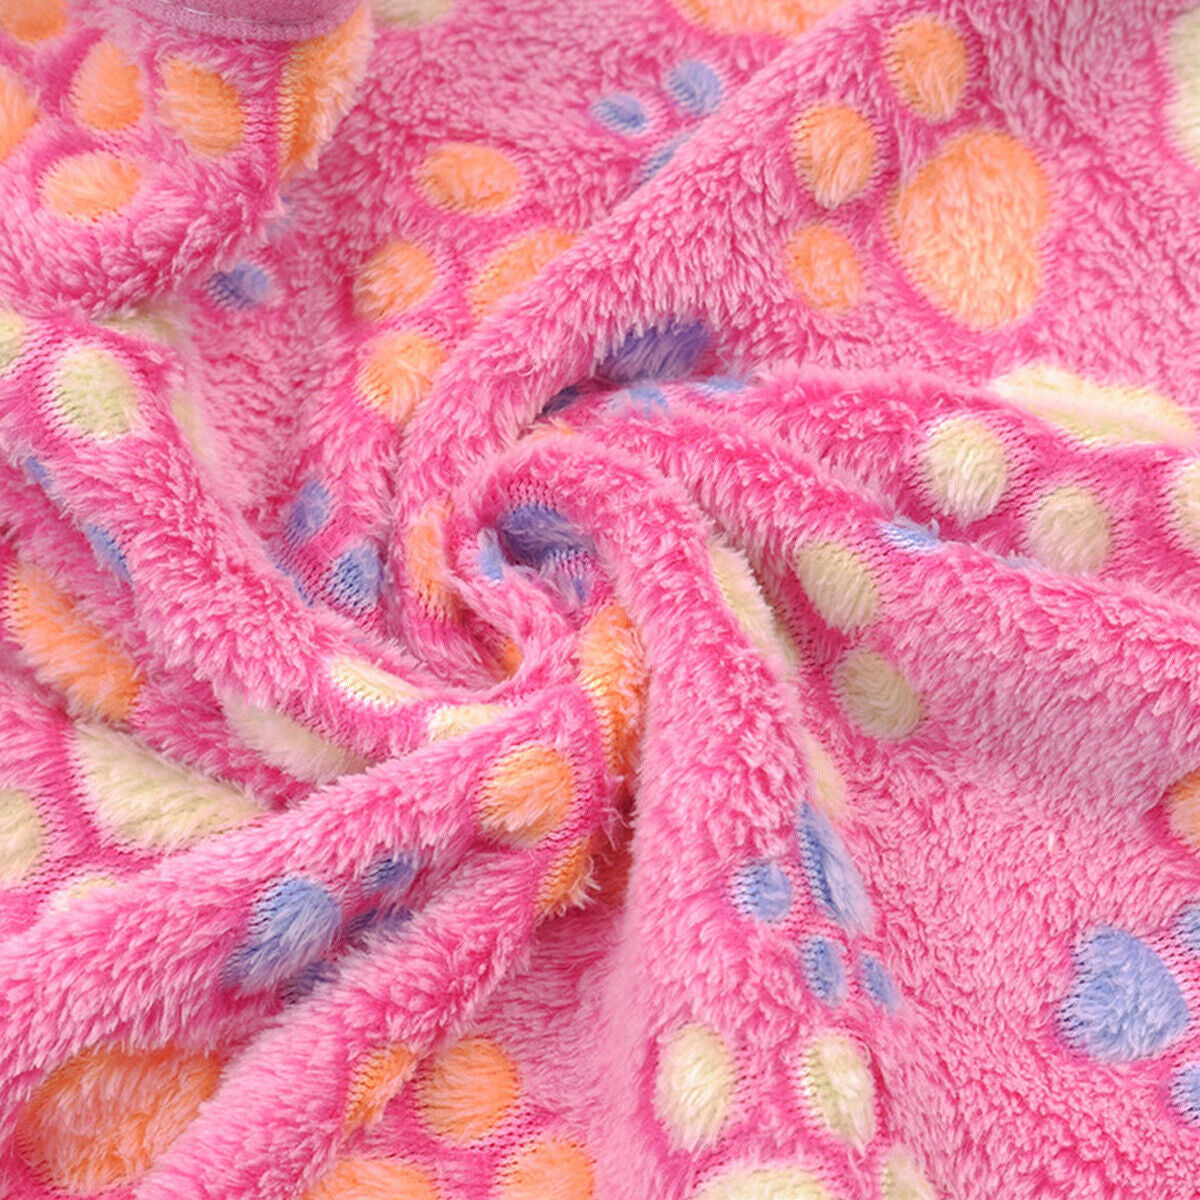 Pet Mat Paw Print Cat Dog Puppy Fleece Soft Warm Blanket Bed Cushion Mattress